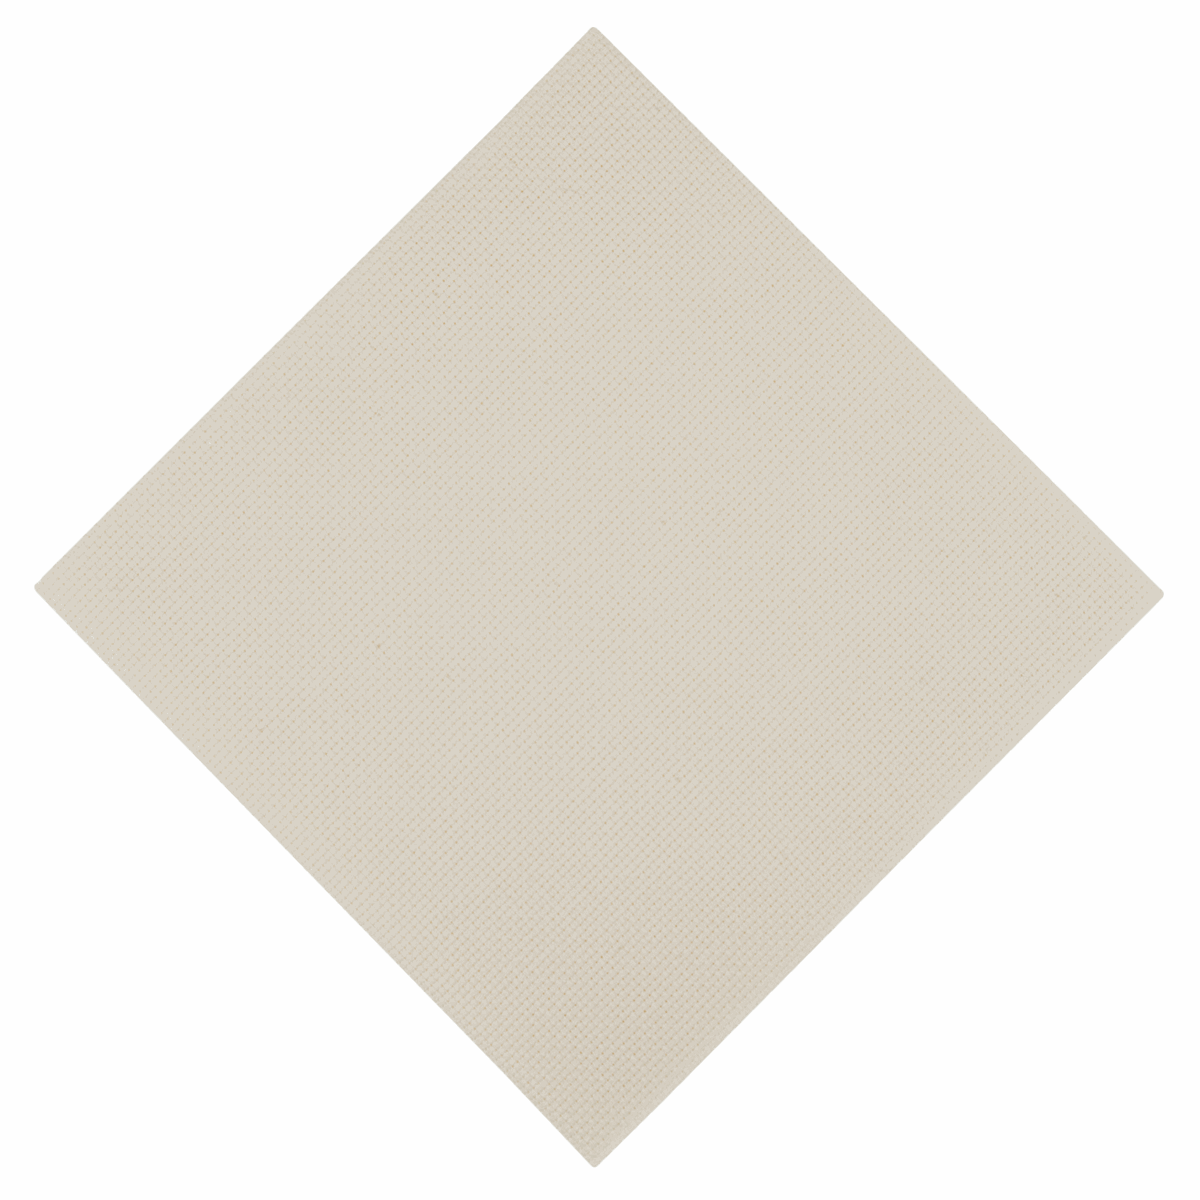 Trimits Cream Needlecraft Fabric - Aida 18 Count 45 x 30cm